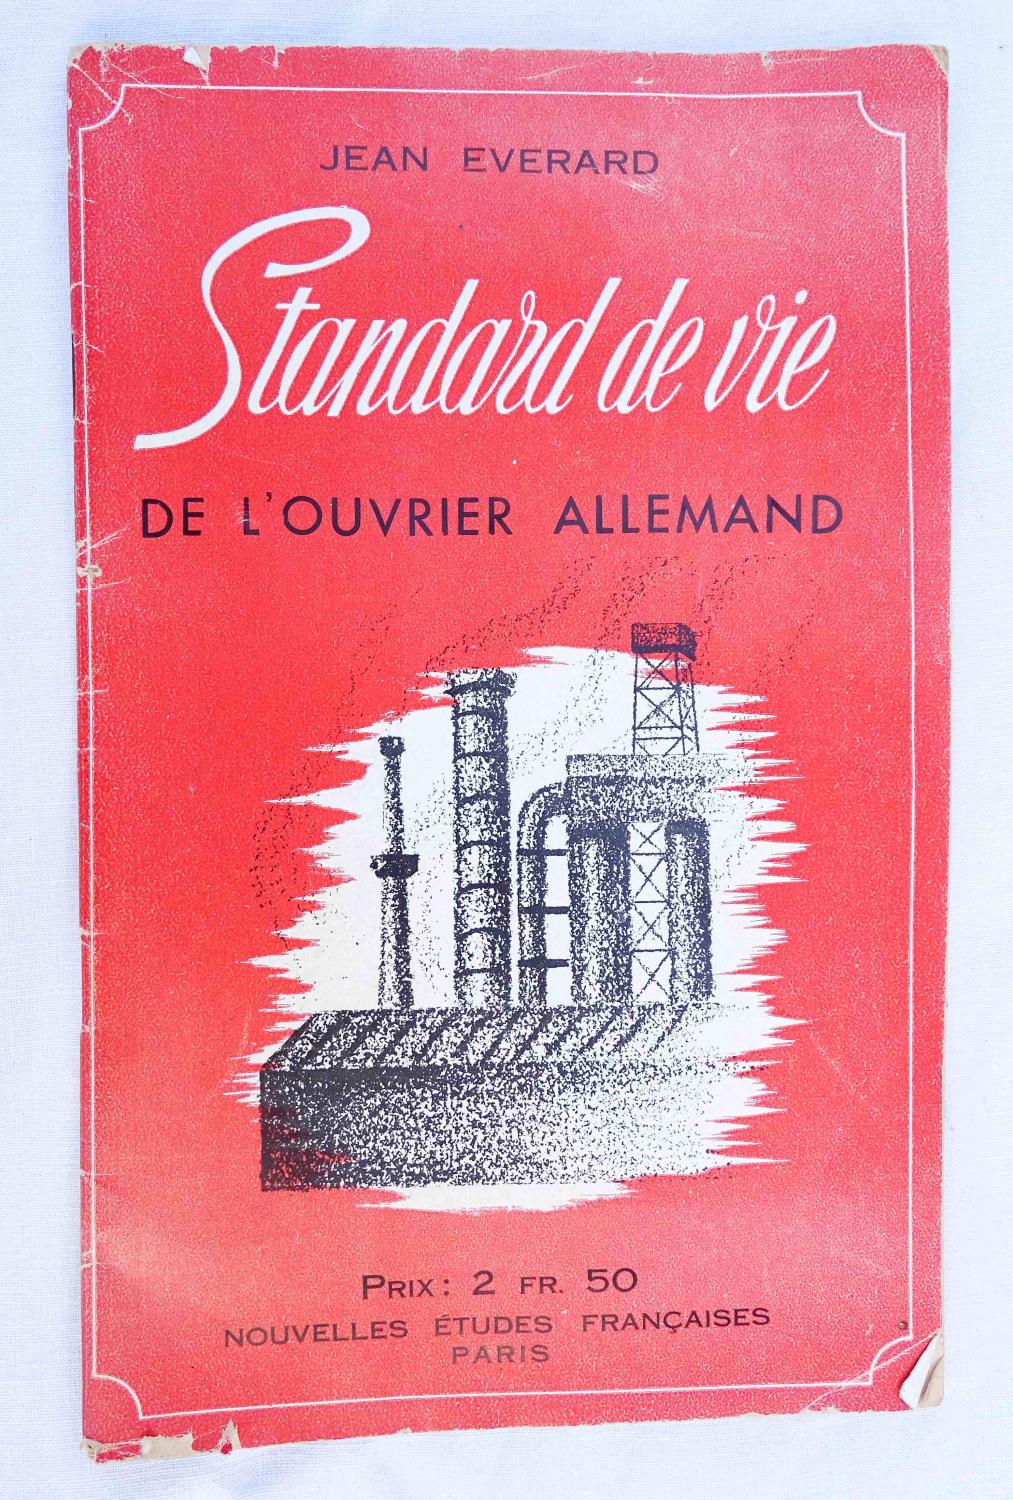 Livret de propagande allemande Standard de vie de l'Ouvrier allemand J.  Everard  WW2